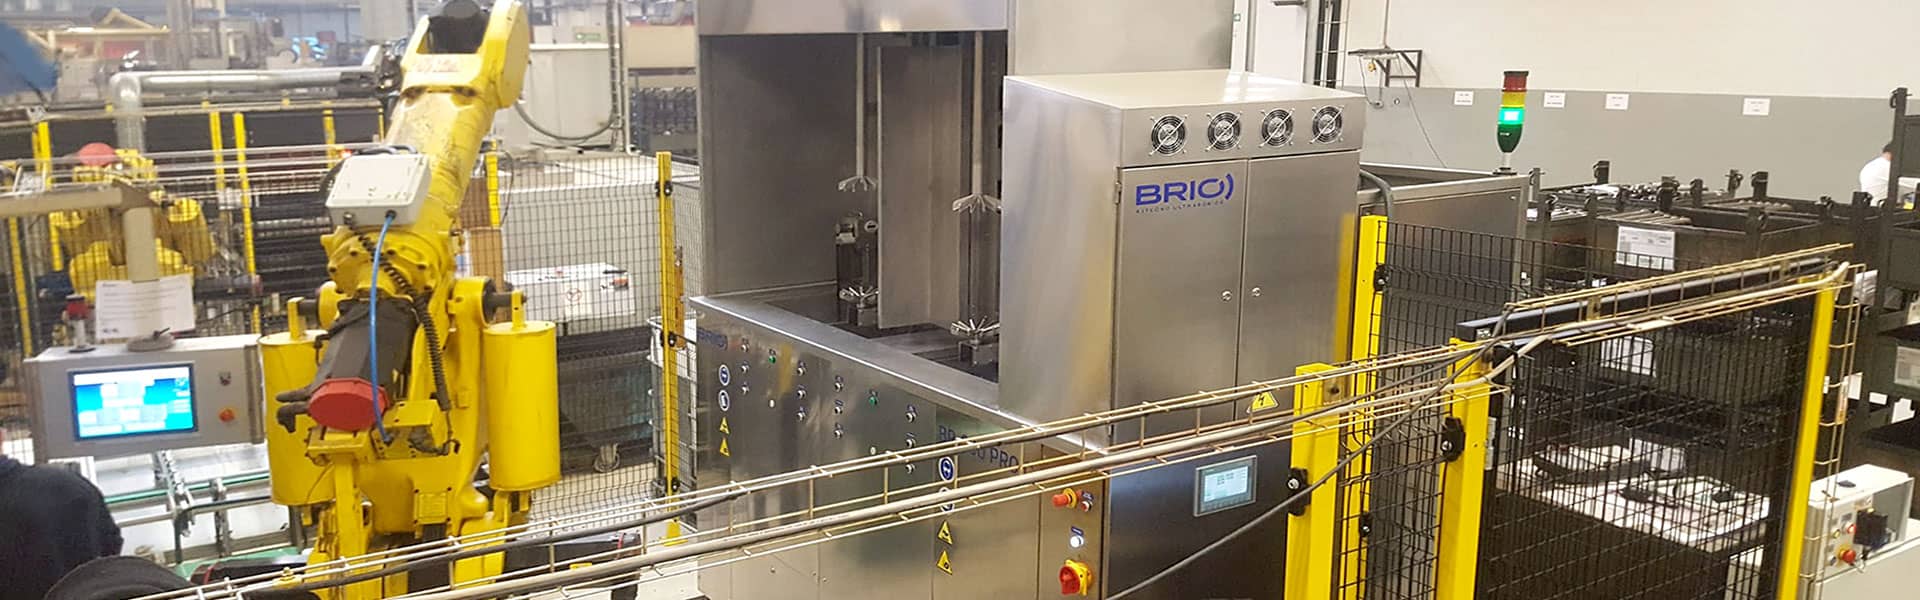 BRIO-Ultraschallreinigung High-End-Anlage